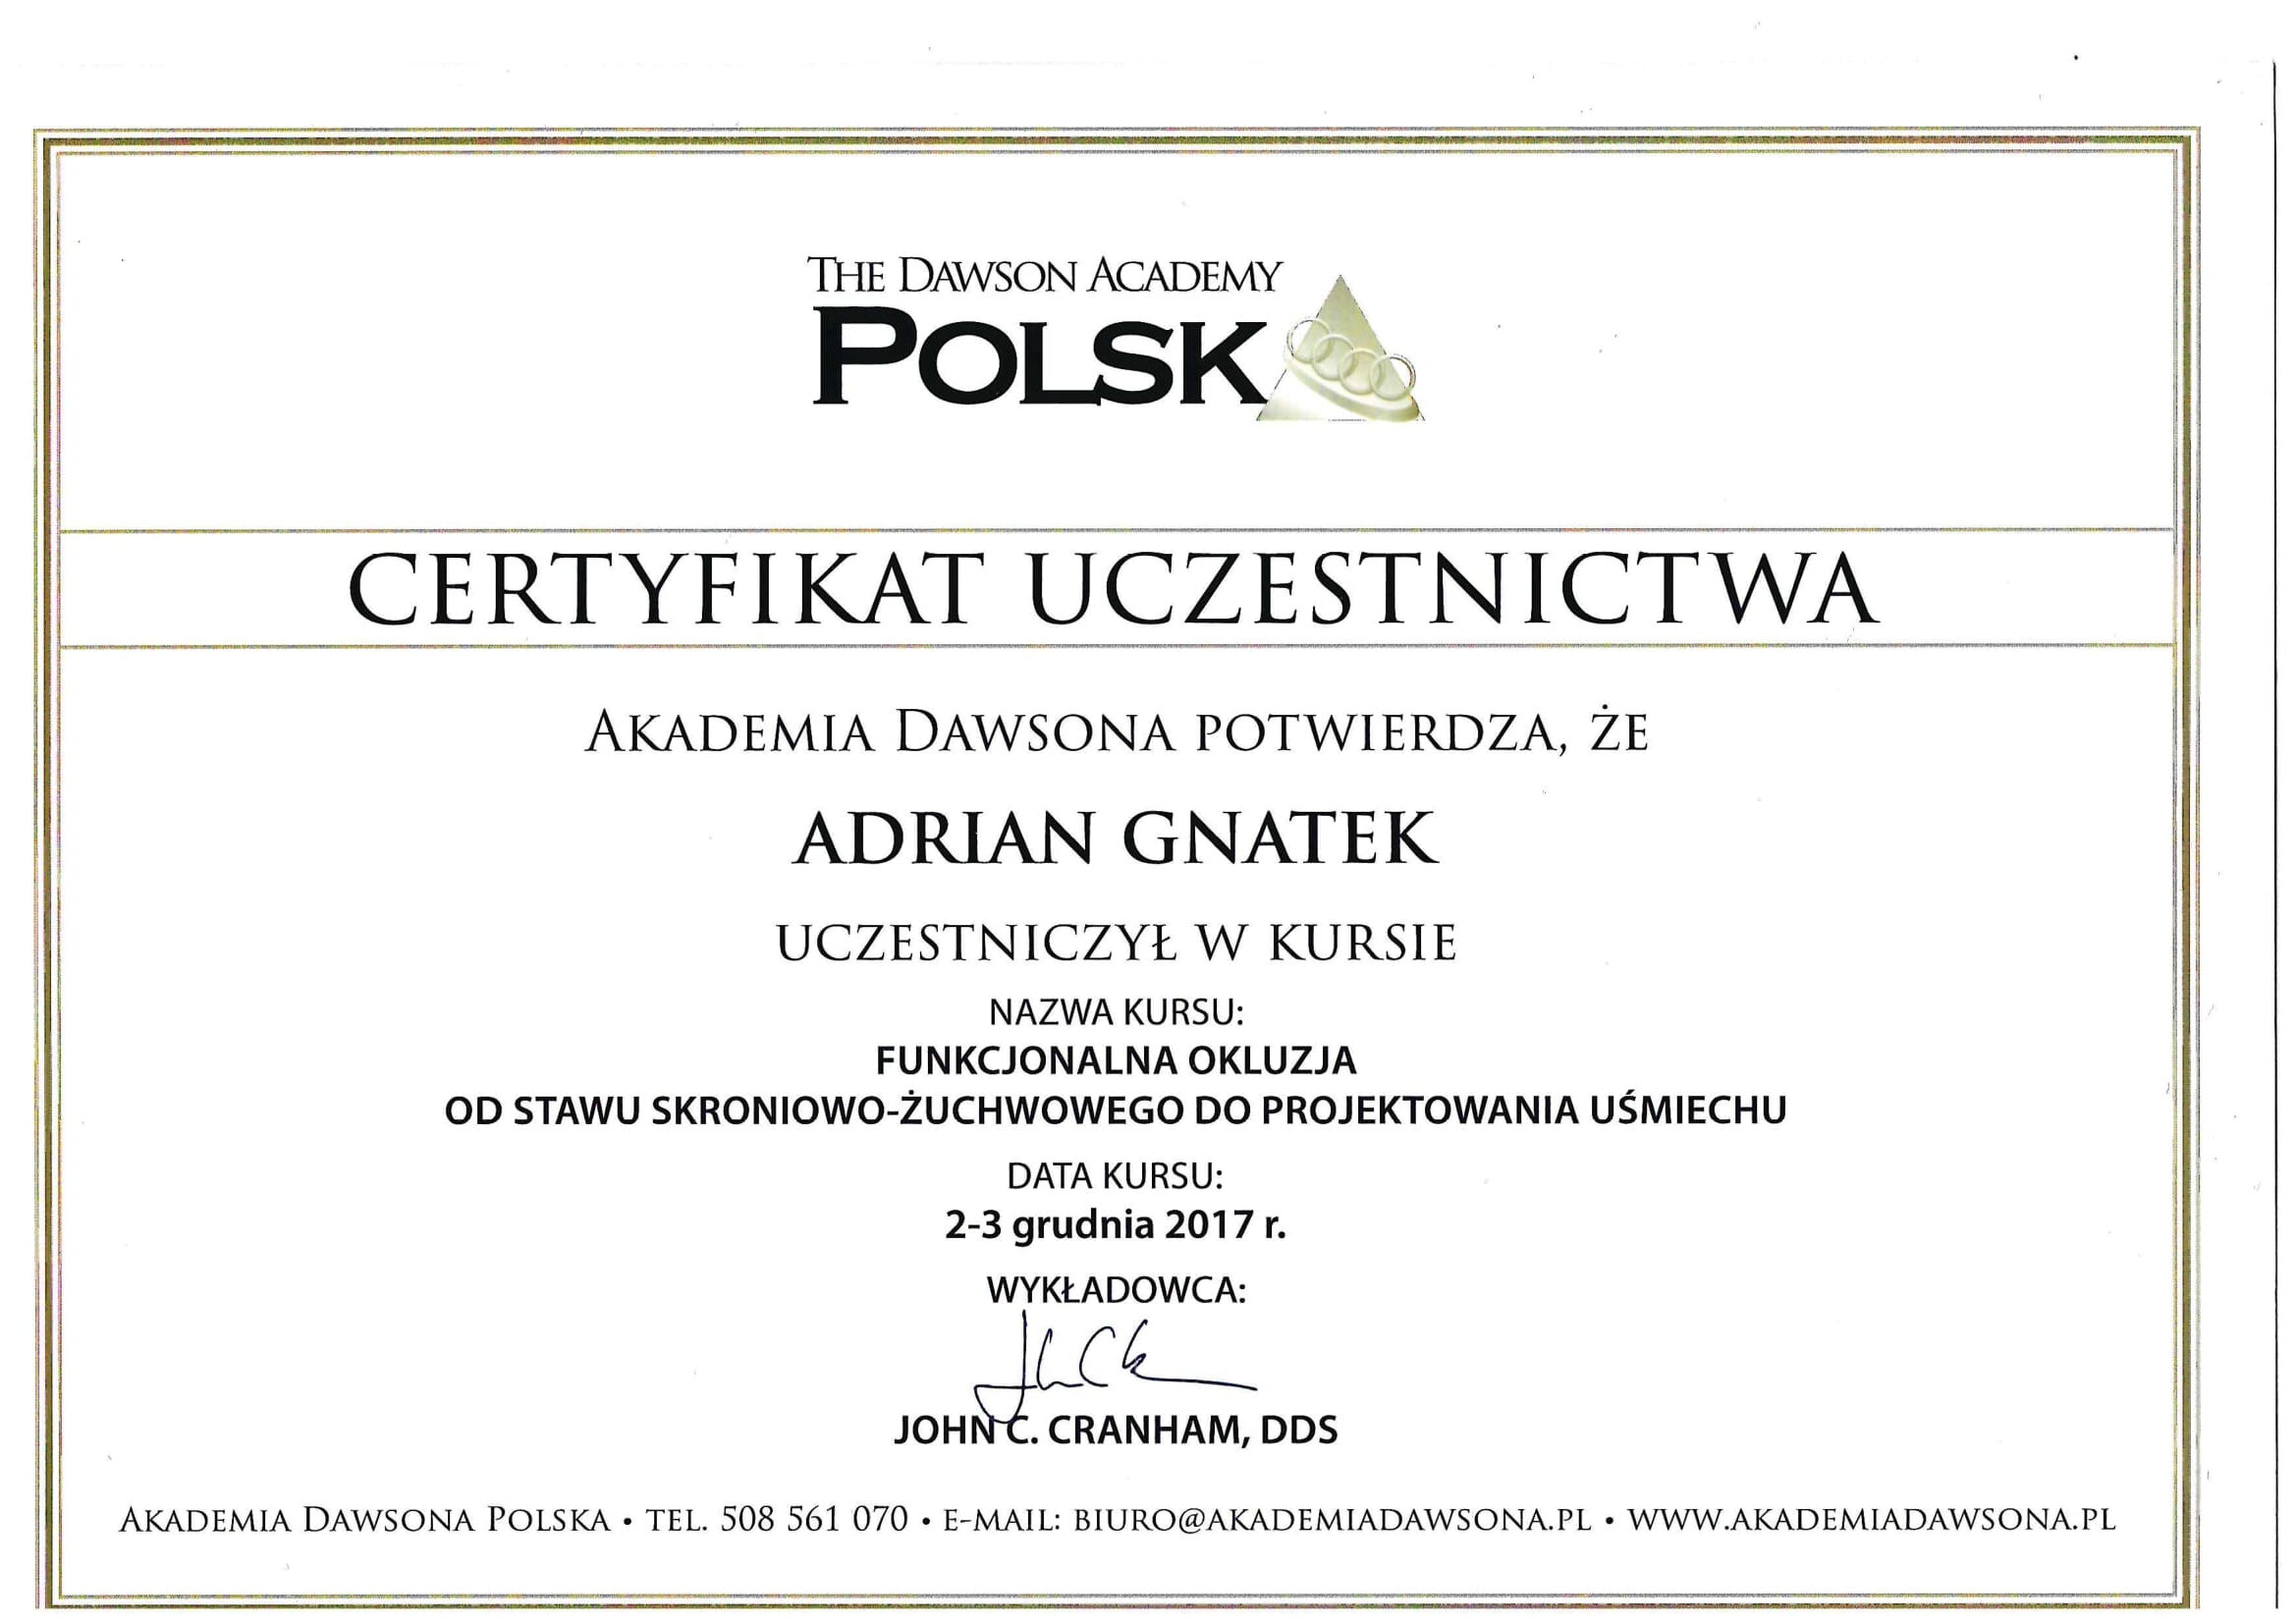 Certyfikat zdobyty przez chirurga Adriana Gnatka podczas kursu prowadzonego przez Johna Cranhama w Akademi Dawsona